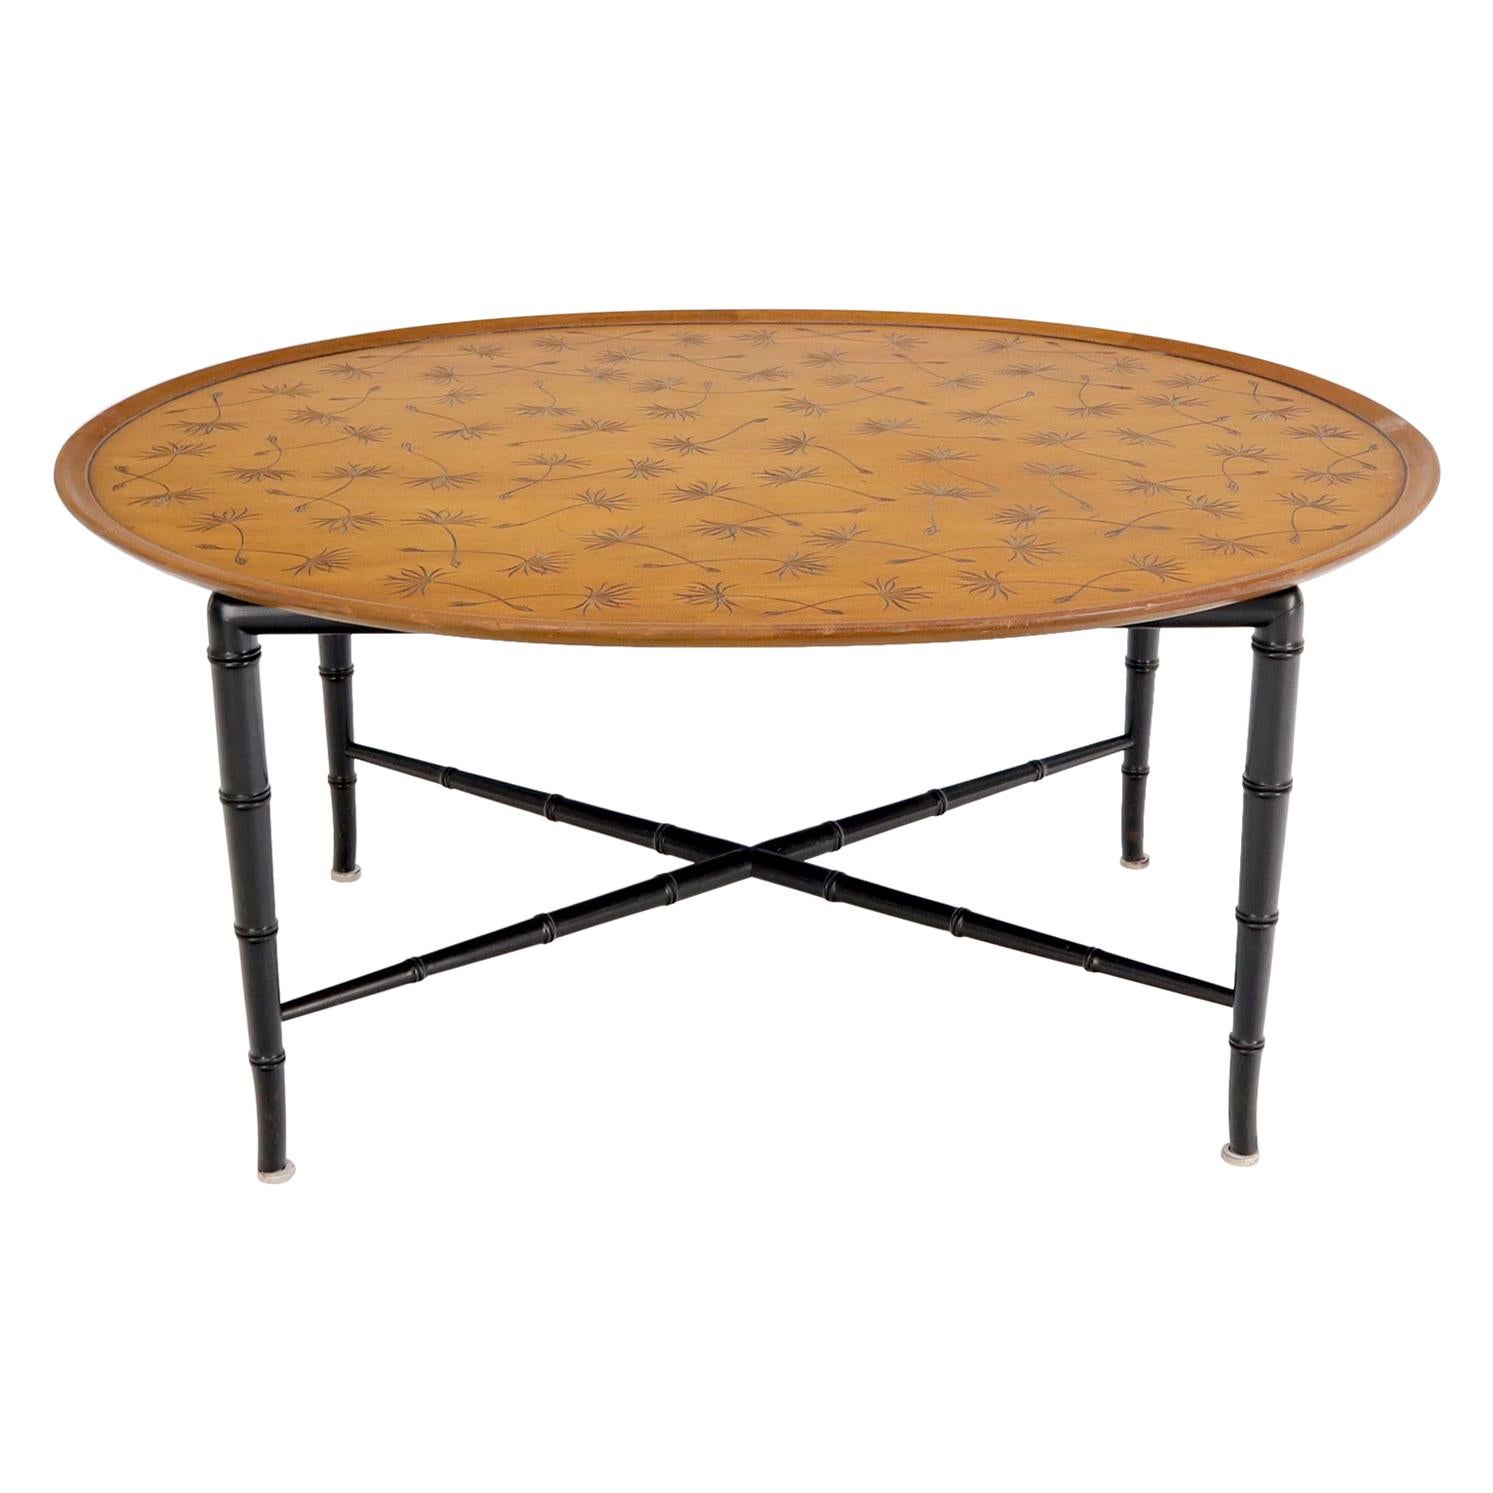 Table basse ovale Kittinger avec pieds fuselés en faux bambou et motif de feuilles incisées sur le dessus